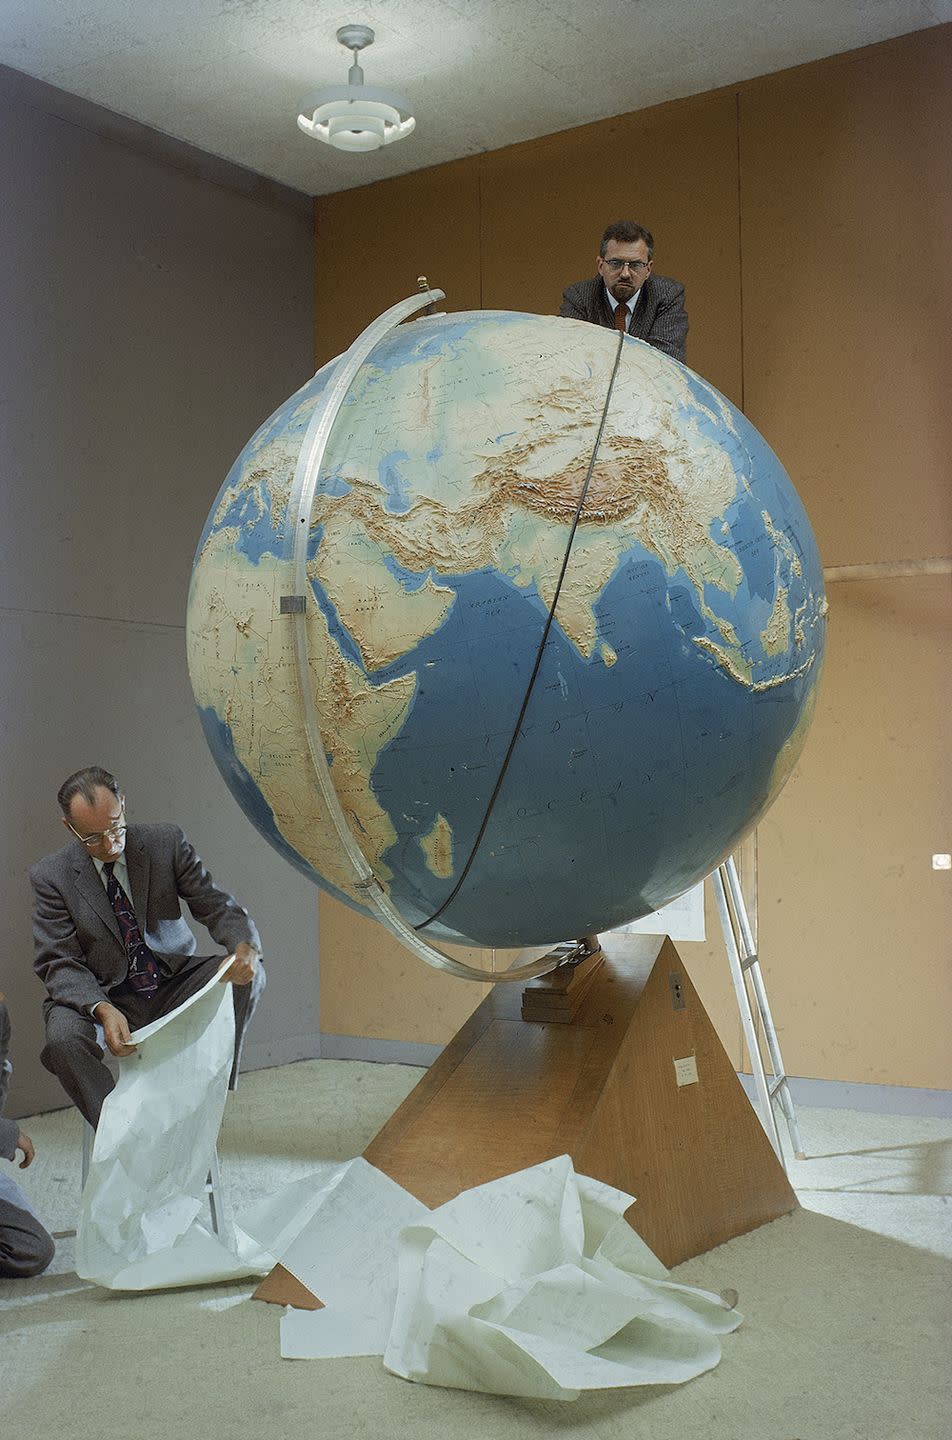 1957: Sputnik Launches